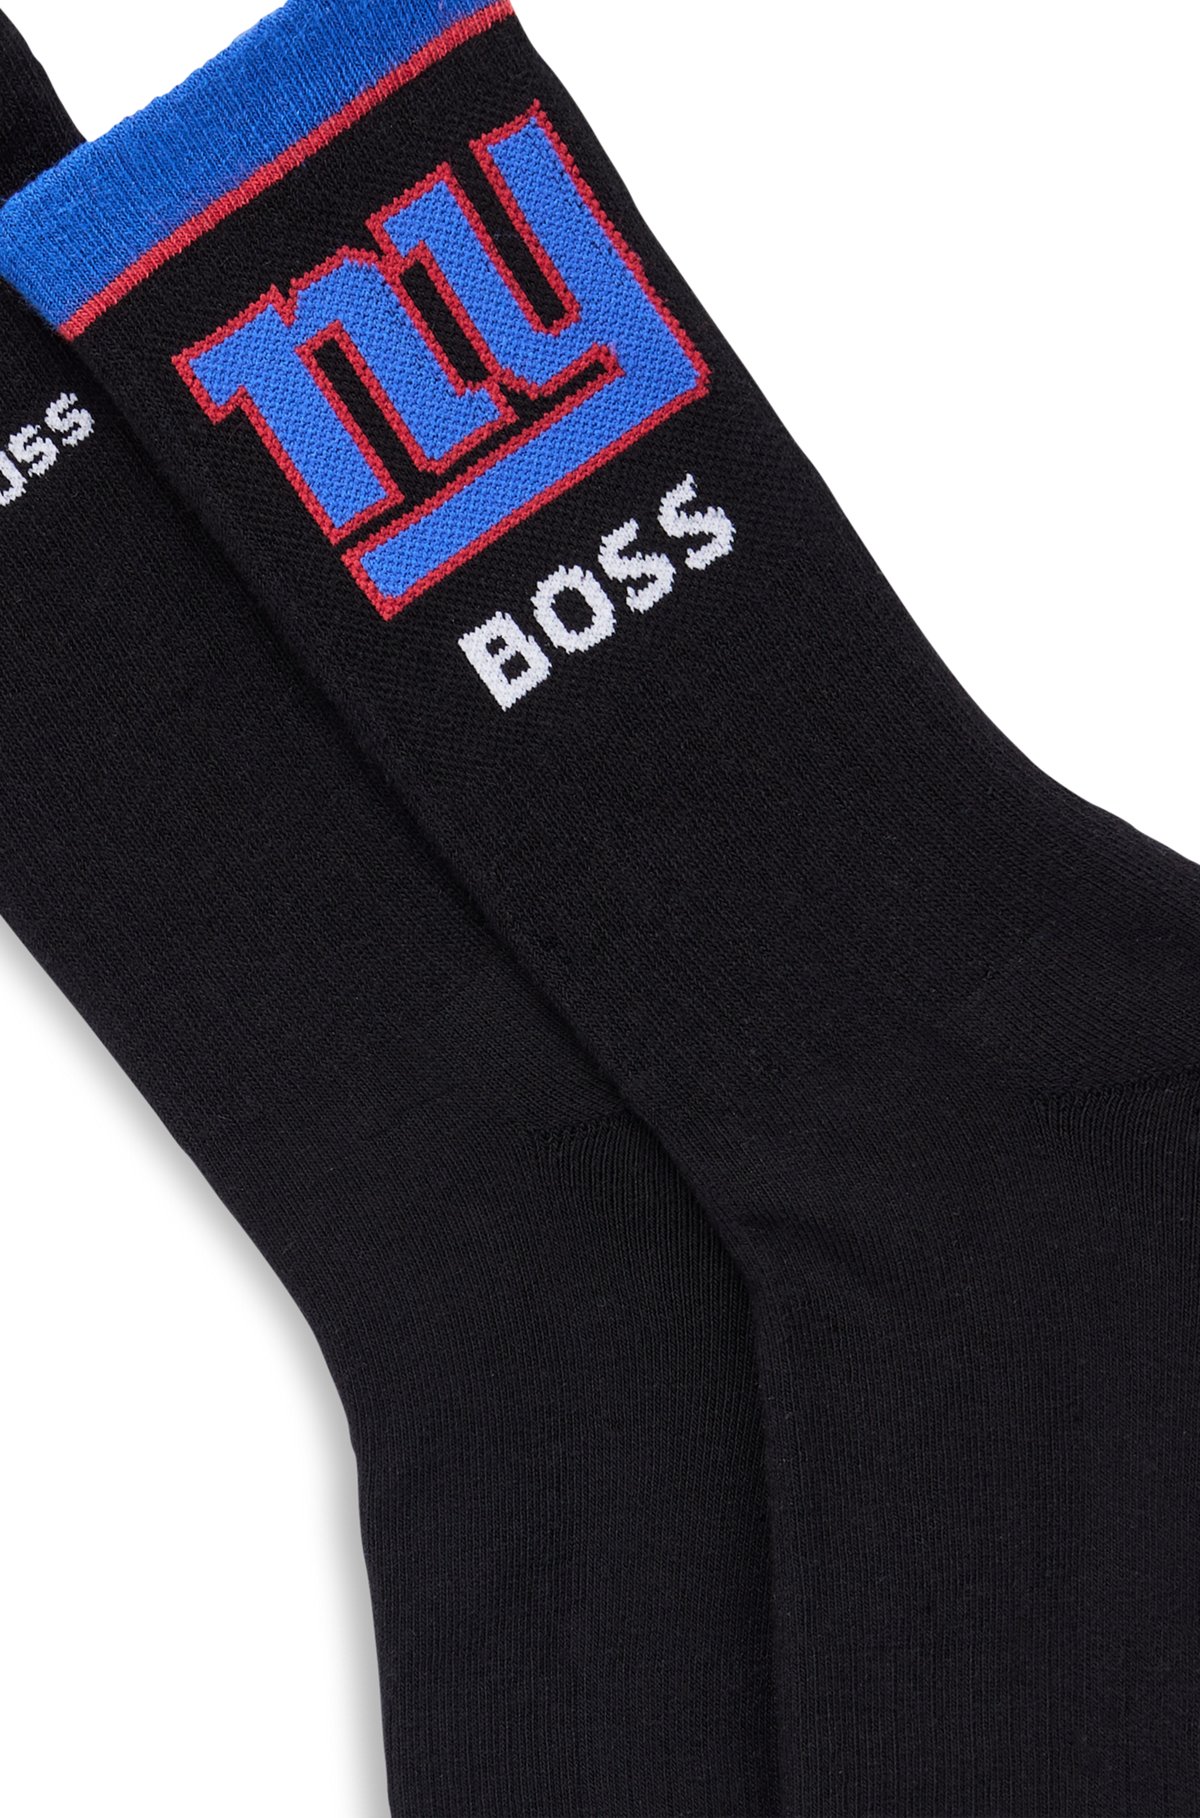 BOSS x NFL two-pack of cotton-blend short socks, Giants